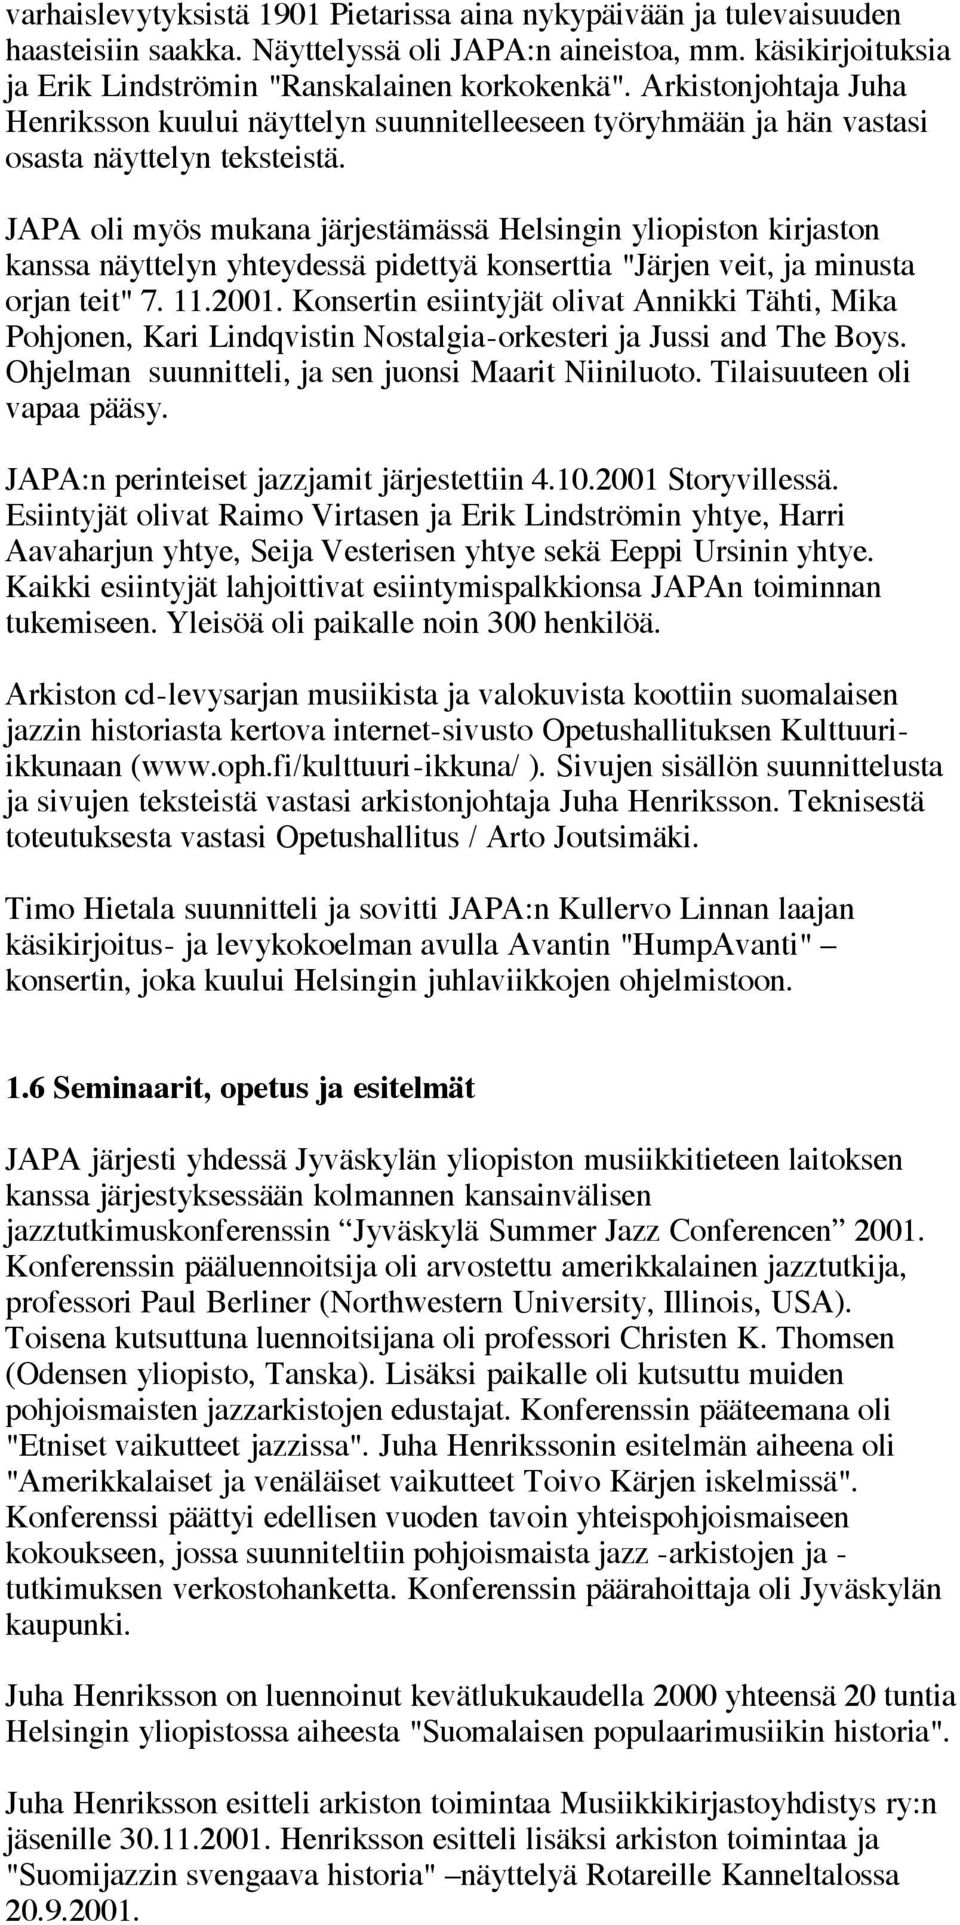 JAPA oli myös mukana järjestämässä Helsingin yliopiston kirjaston kanssa näyttelyn yhteydessä pidettyä konserttia "Järjen veit, ja minusta orjan teit" 7. 11.2001.